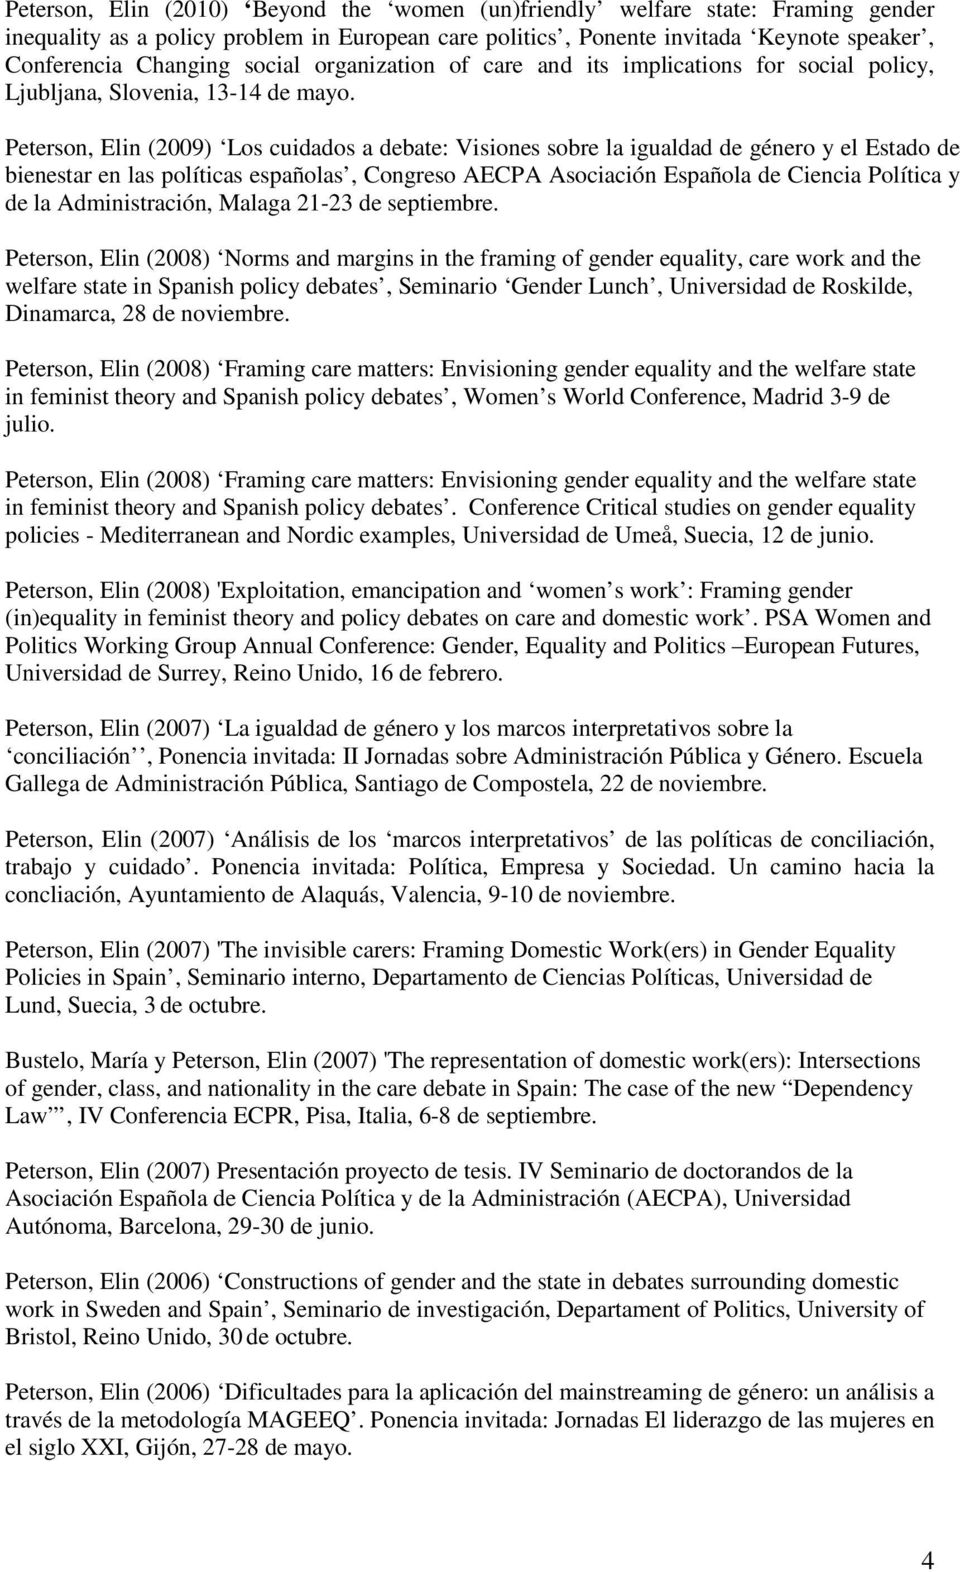 Peterson, Elin (2009) Los cuidados a debate: Visiones sobre la igualdad de género y el Estado de bienestar en las políticas españolas, Congreso AECPA Asociación Española de Ciencia Política y de la